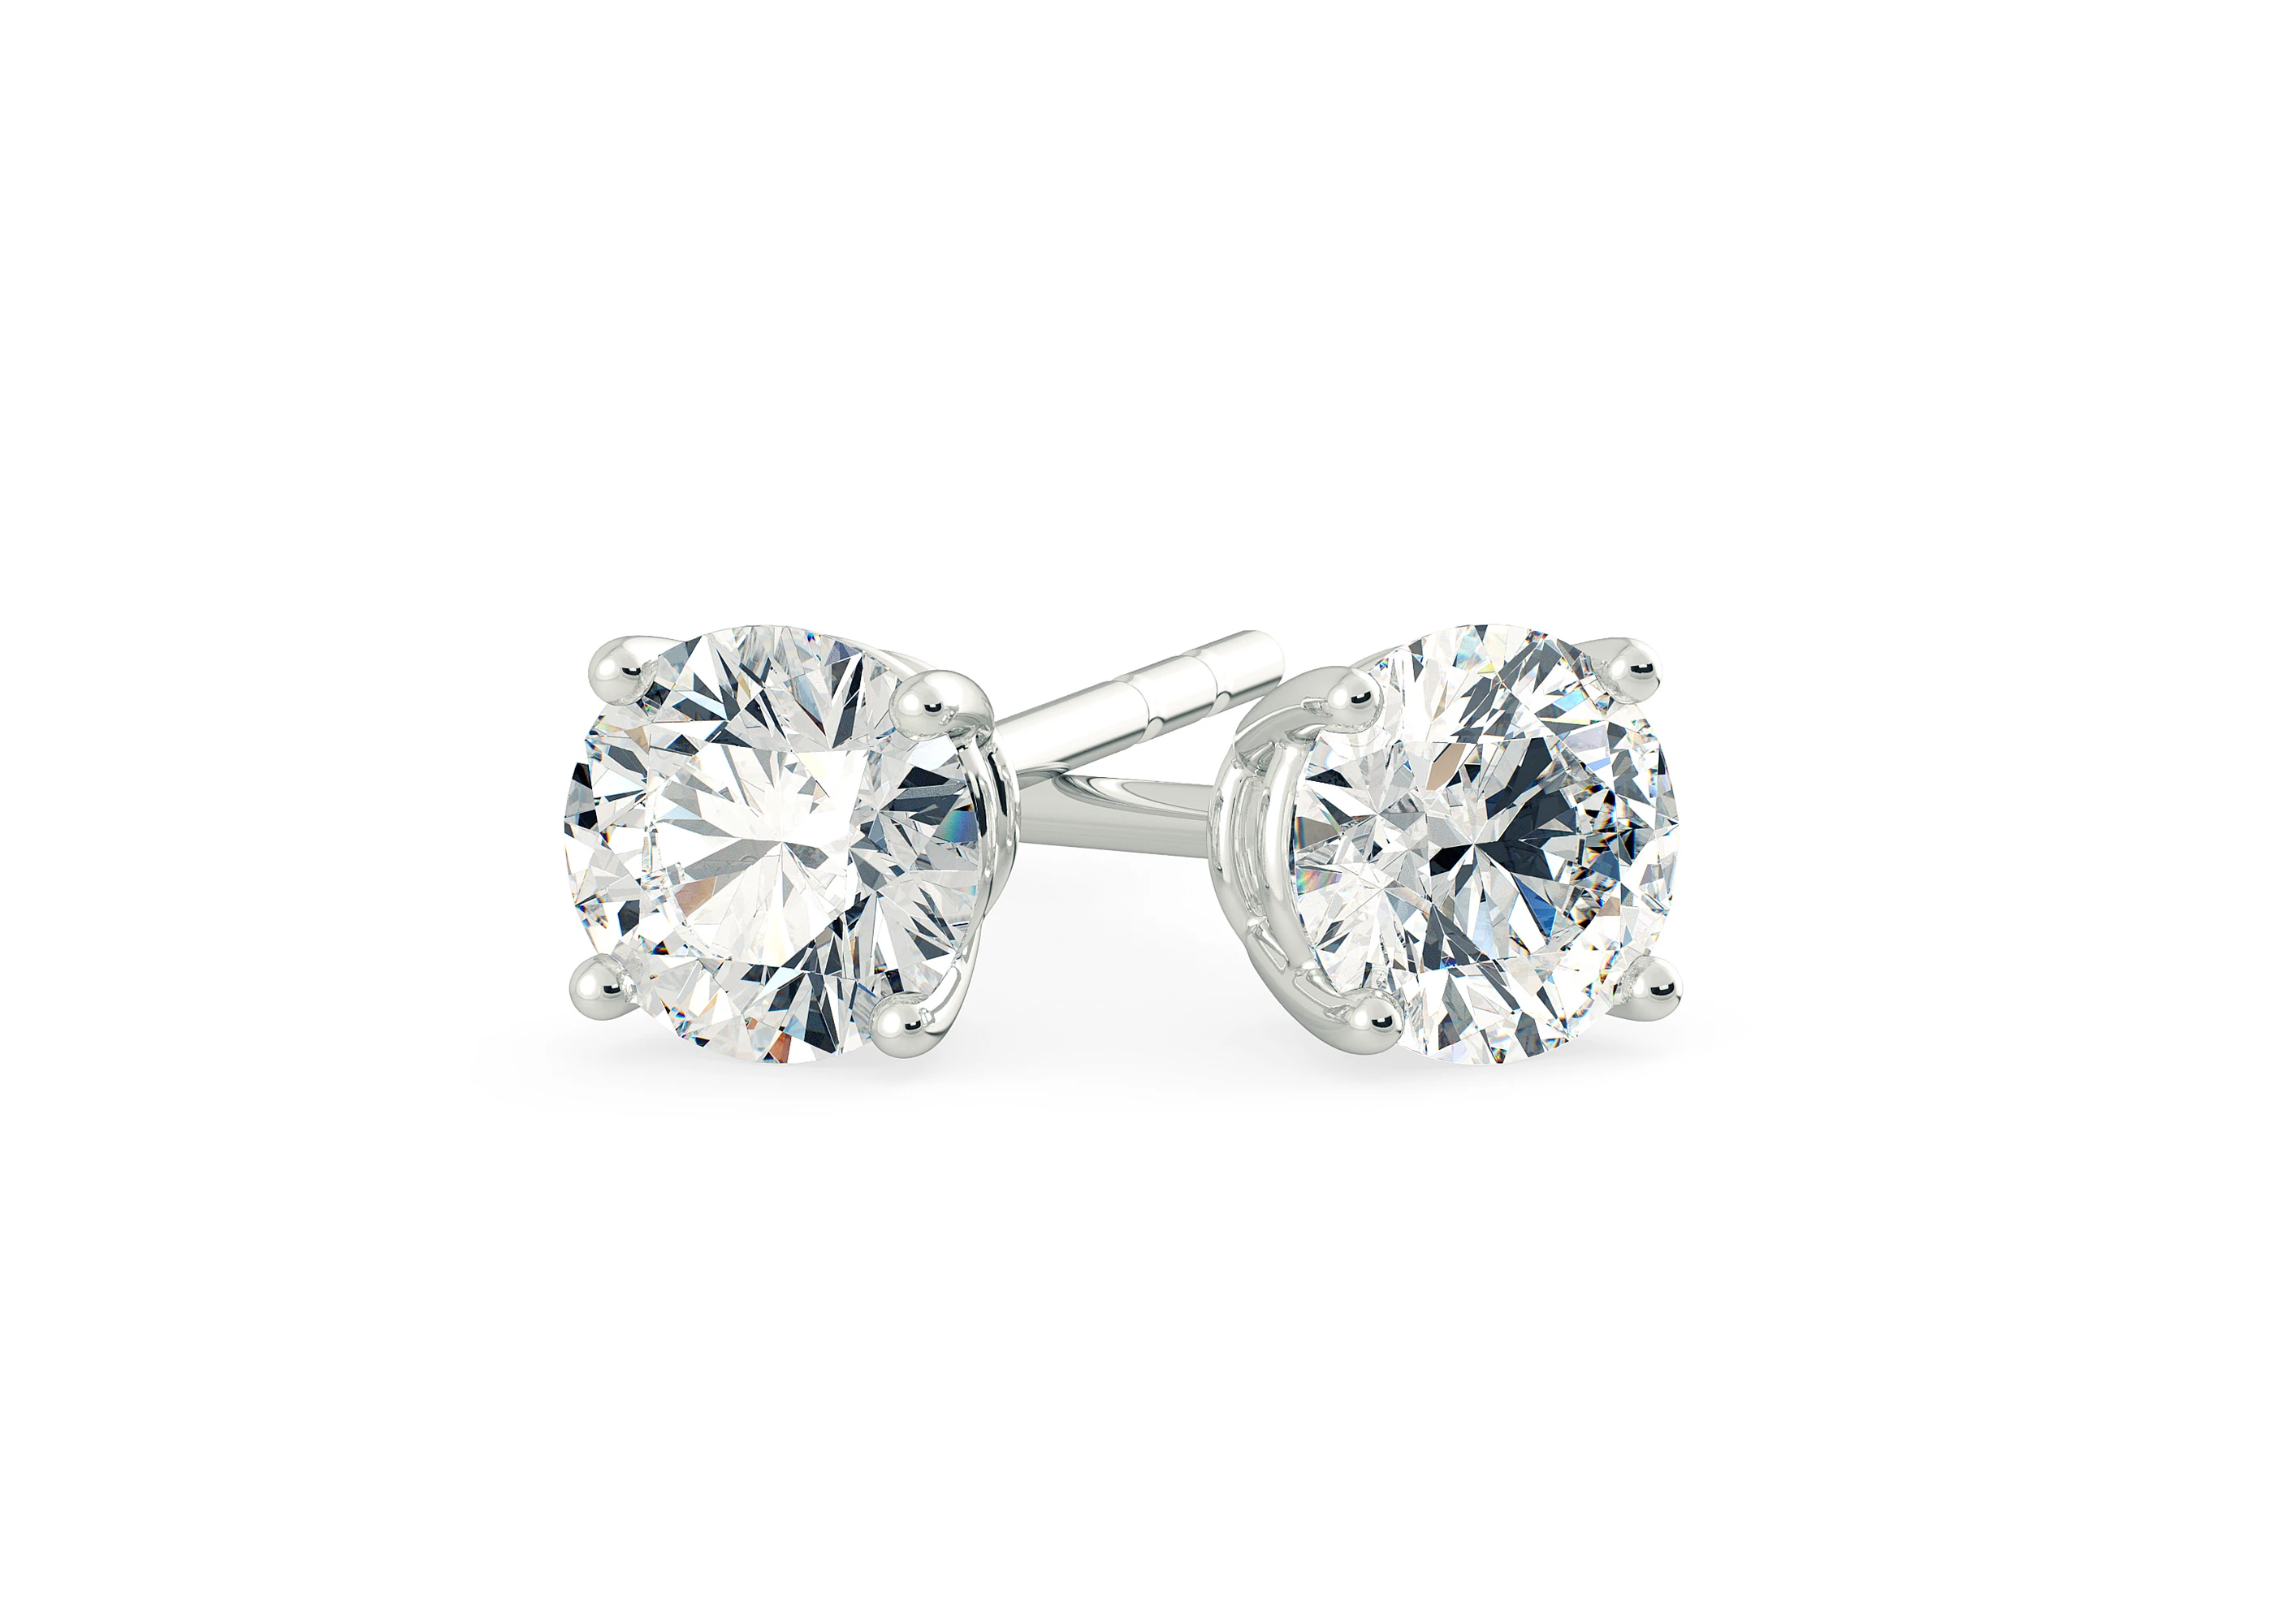 Half Carat Round Brilliant Diamond Stud Earrings in Platinum 950